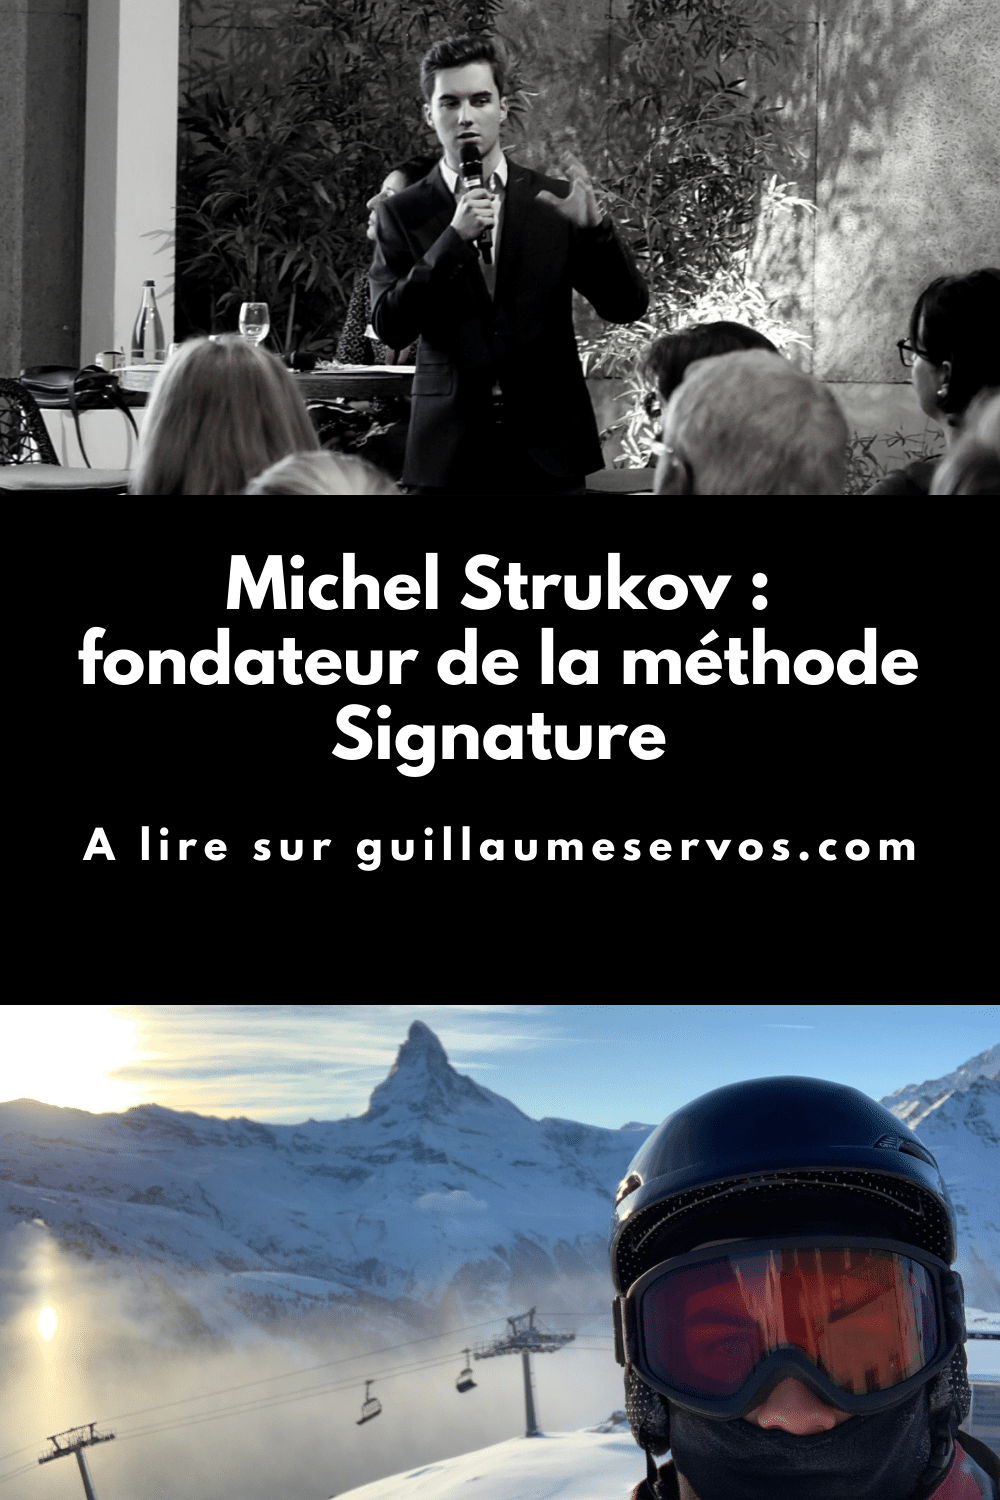 Découvre mon interview avec Michel Strukov, consultant et fondateur de la méthode Signature. Son rapport à l'entrepreneuriat, aux réseaux sociaux et au voyage.